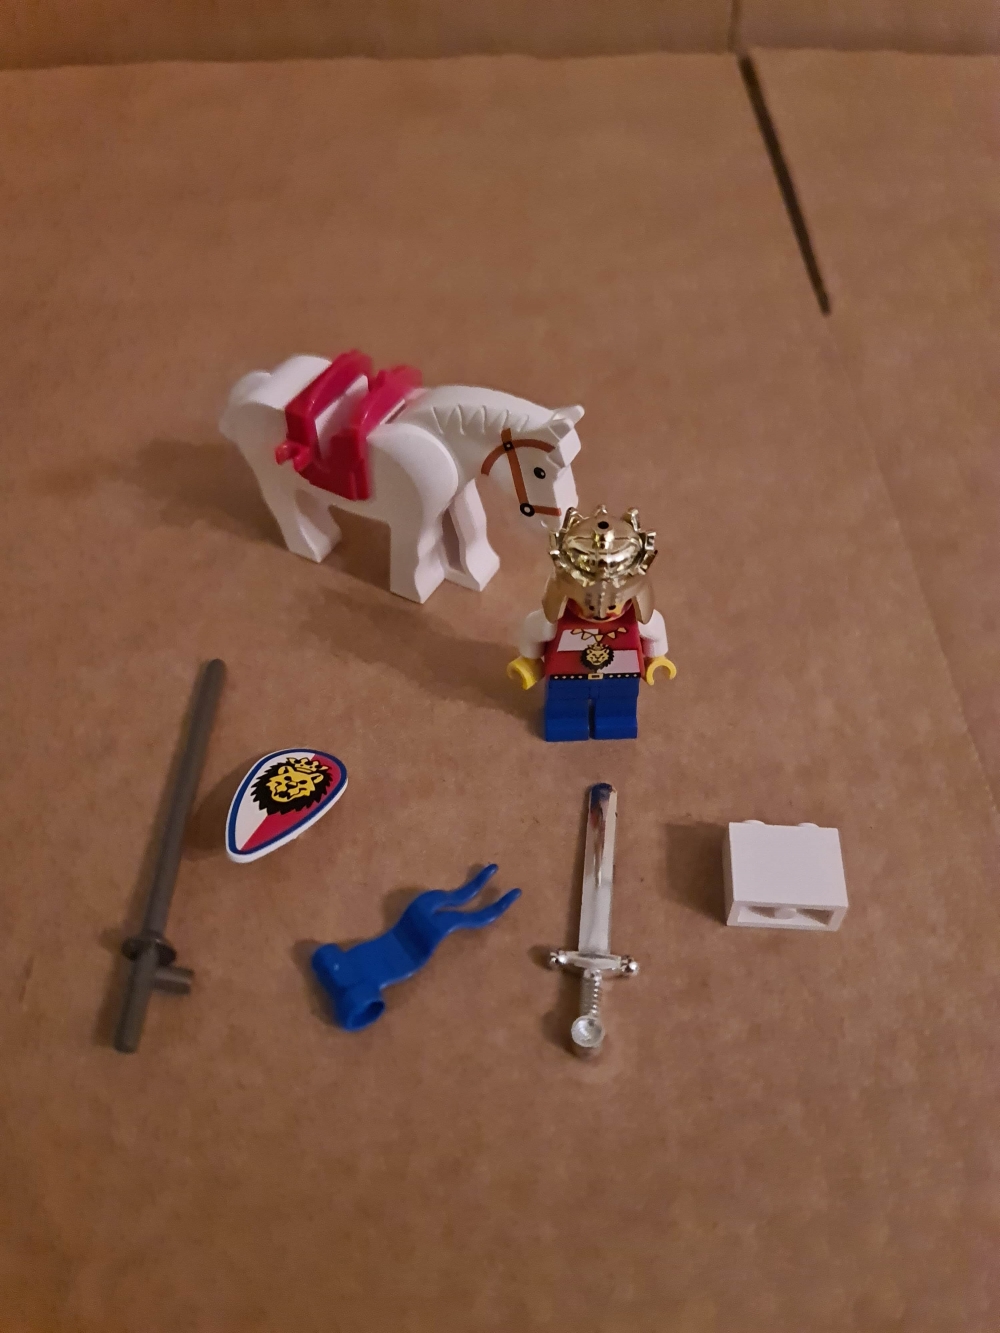 Sett 6008 fra Lego Castle : Royal Knights serien.

Nydelig sett. Bortimot perfekt.
Helt komplett uten manual da dette ikke er med fra Lego på dette settet.